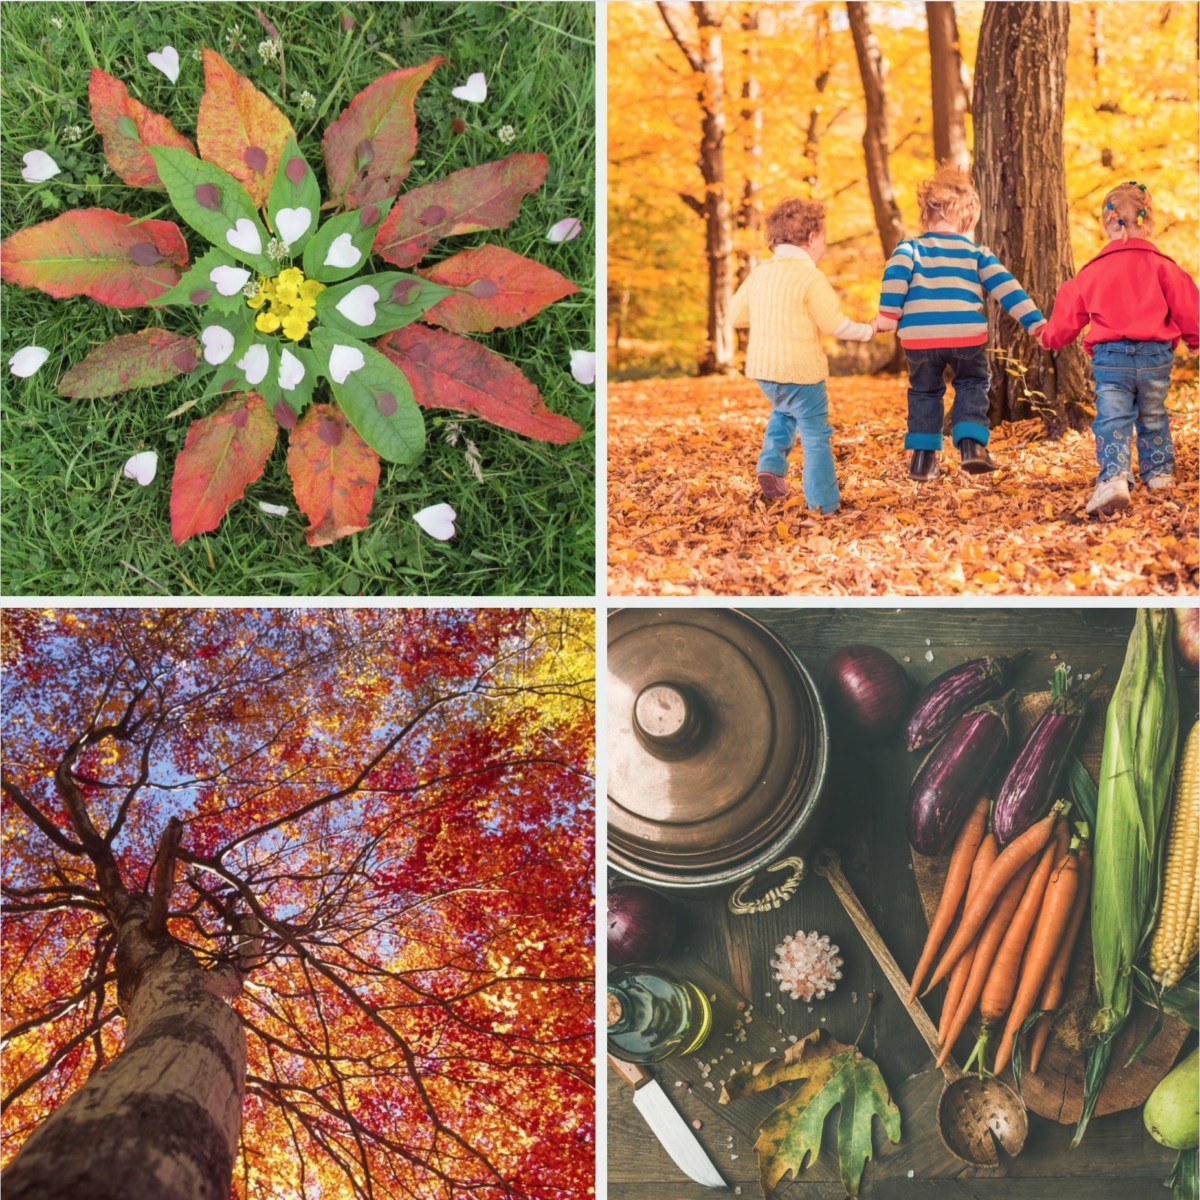 Autumnal ideas for children